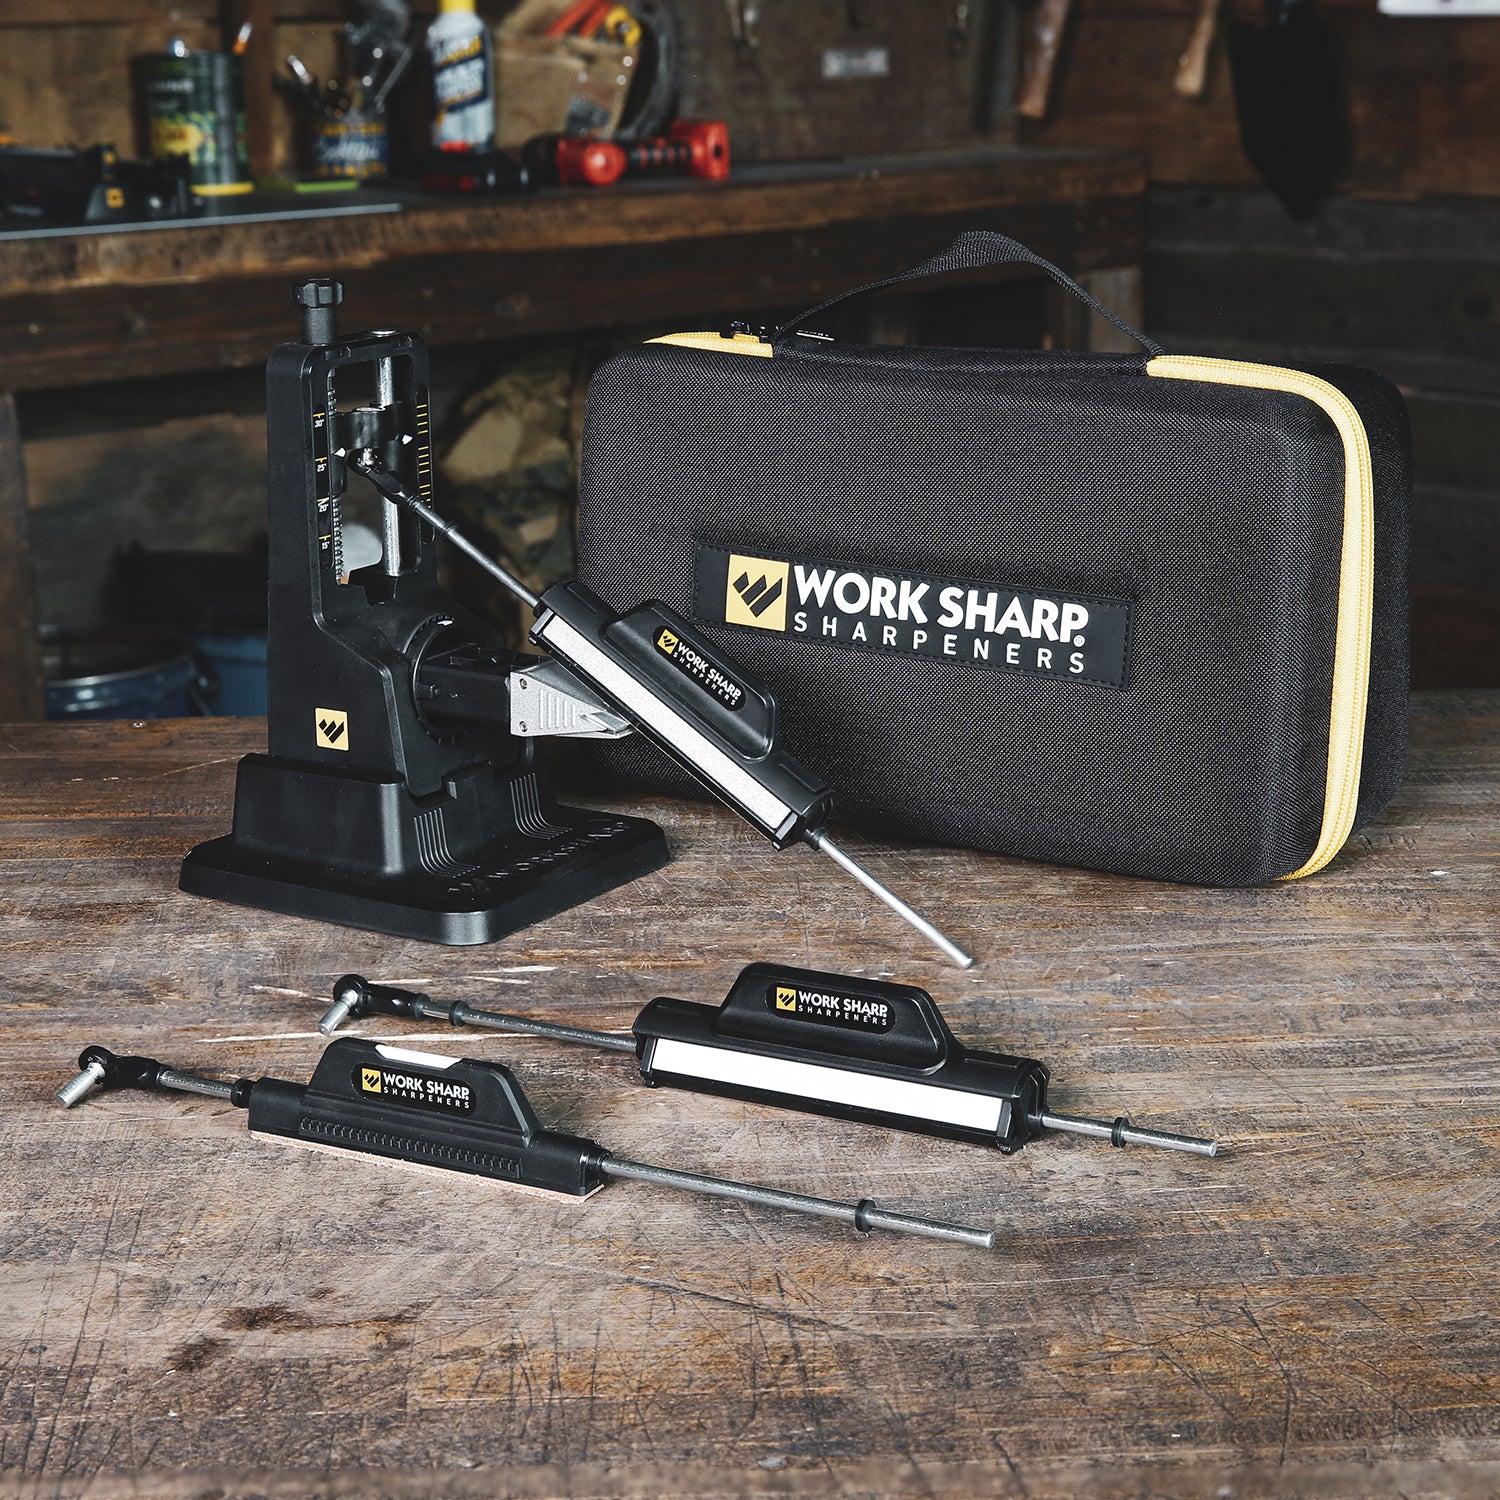 Work Sharp Professional Precision Adjust Knife Sharpener Review